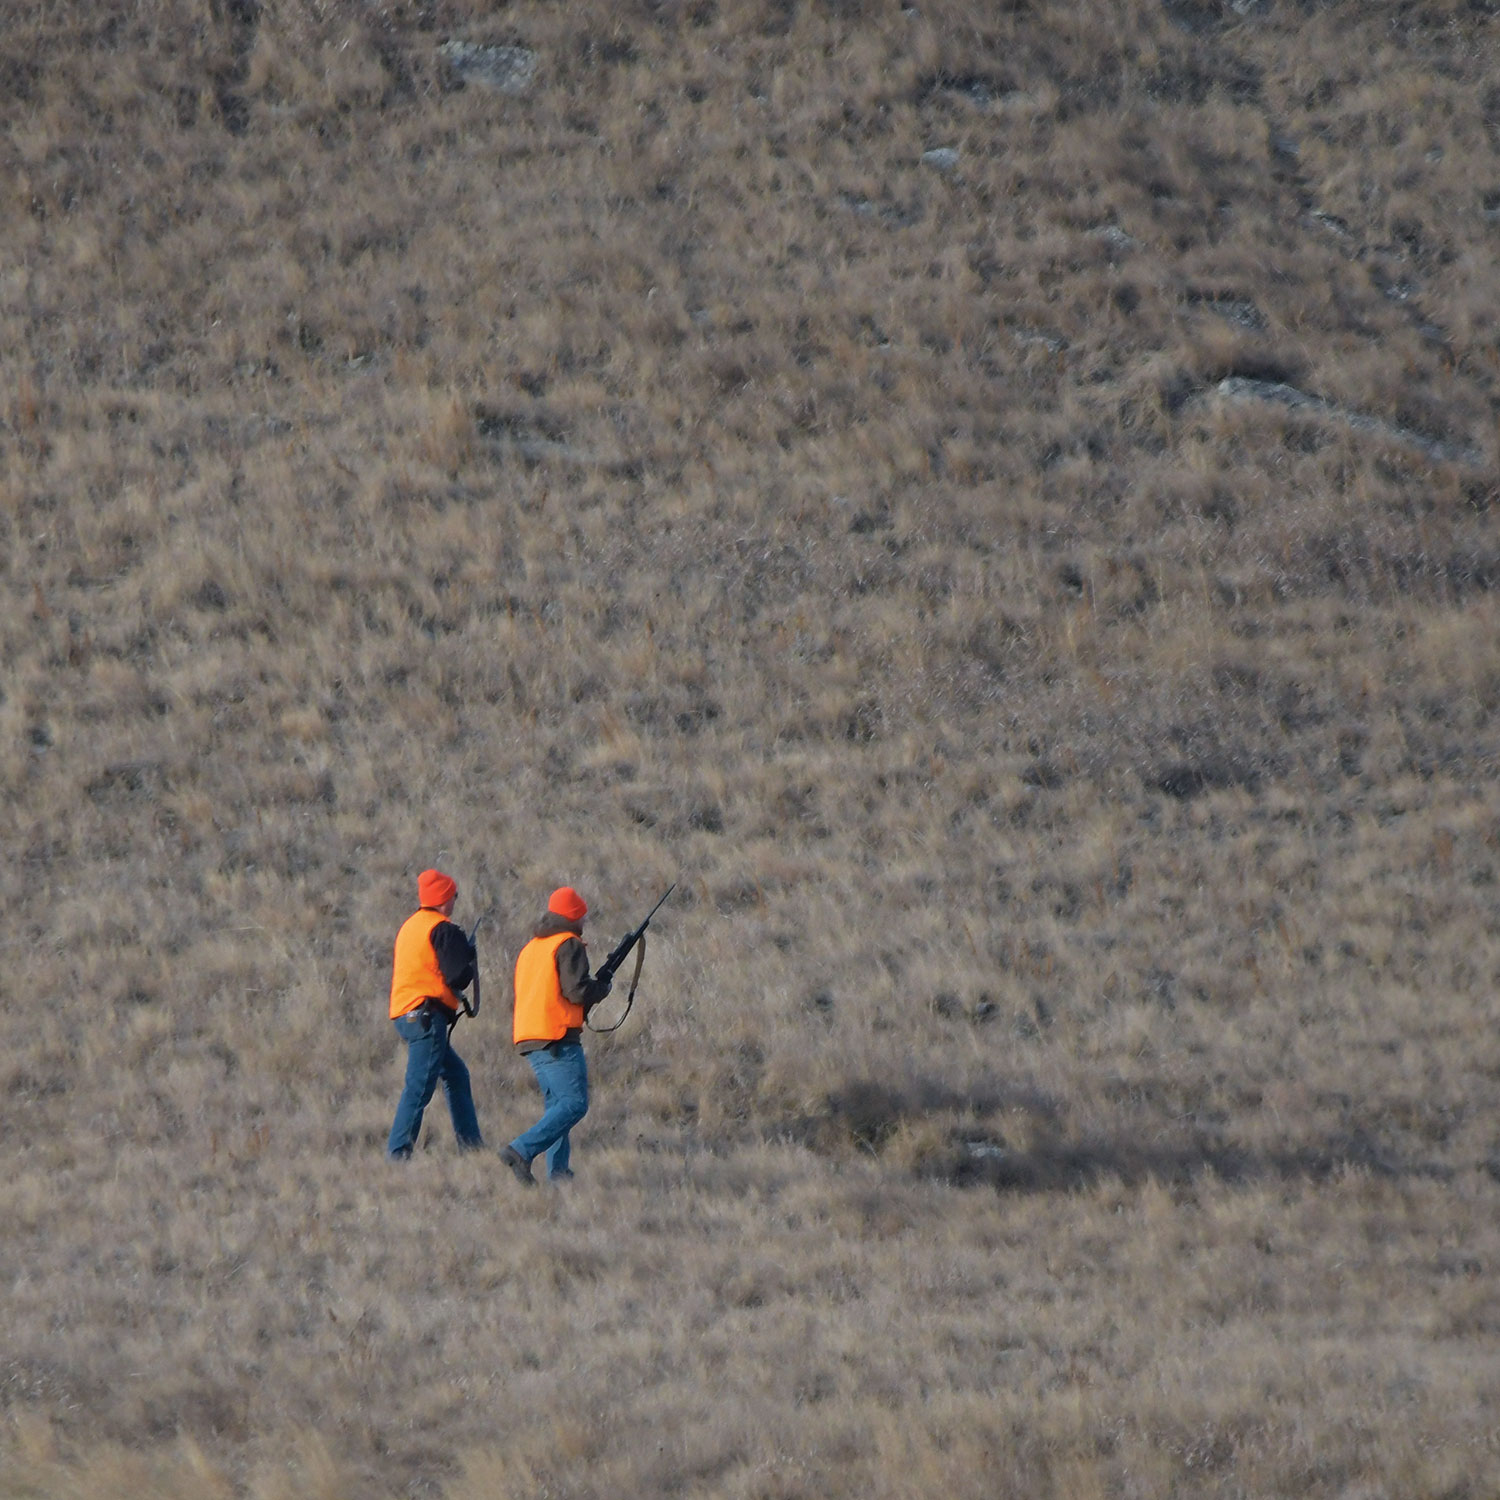 Two deer hunters walking on prairie